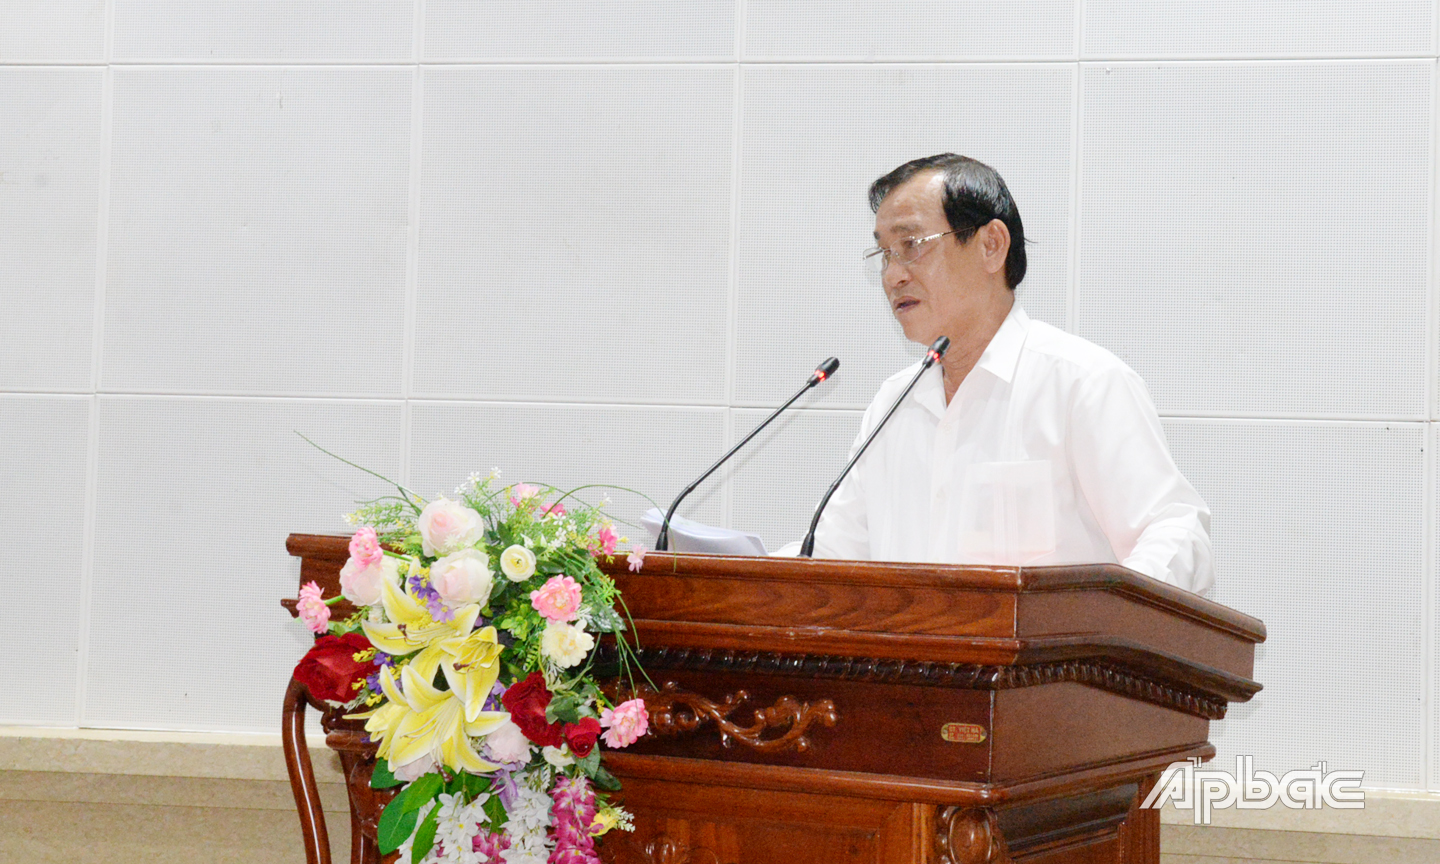 Đồng chí Nguyễn Văn Vĩnh triển khai Công văn 969 của Thủ tướng Chính phủ và lưu ý những nhiệm vụ trọng tâm cần thực hiện trong thời gian thực hiện Chỉ thị 16.